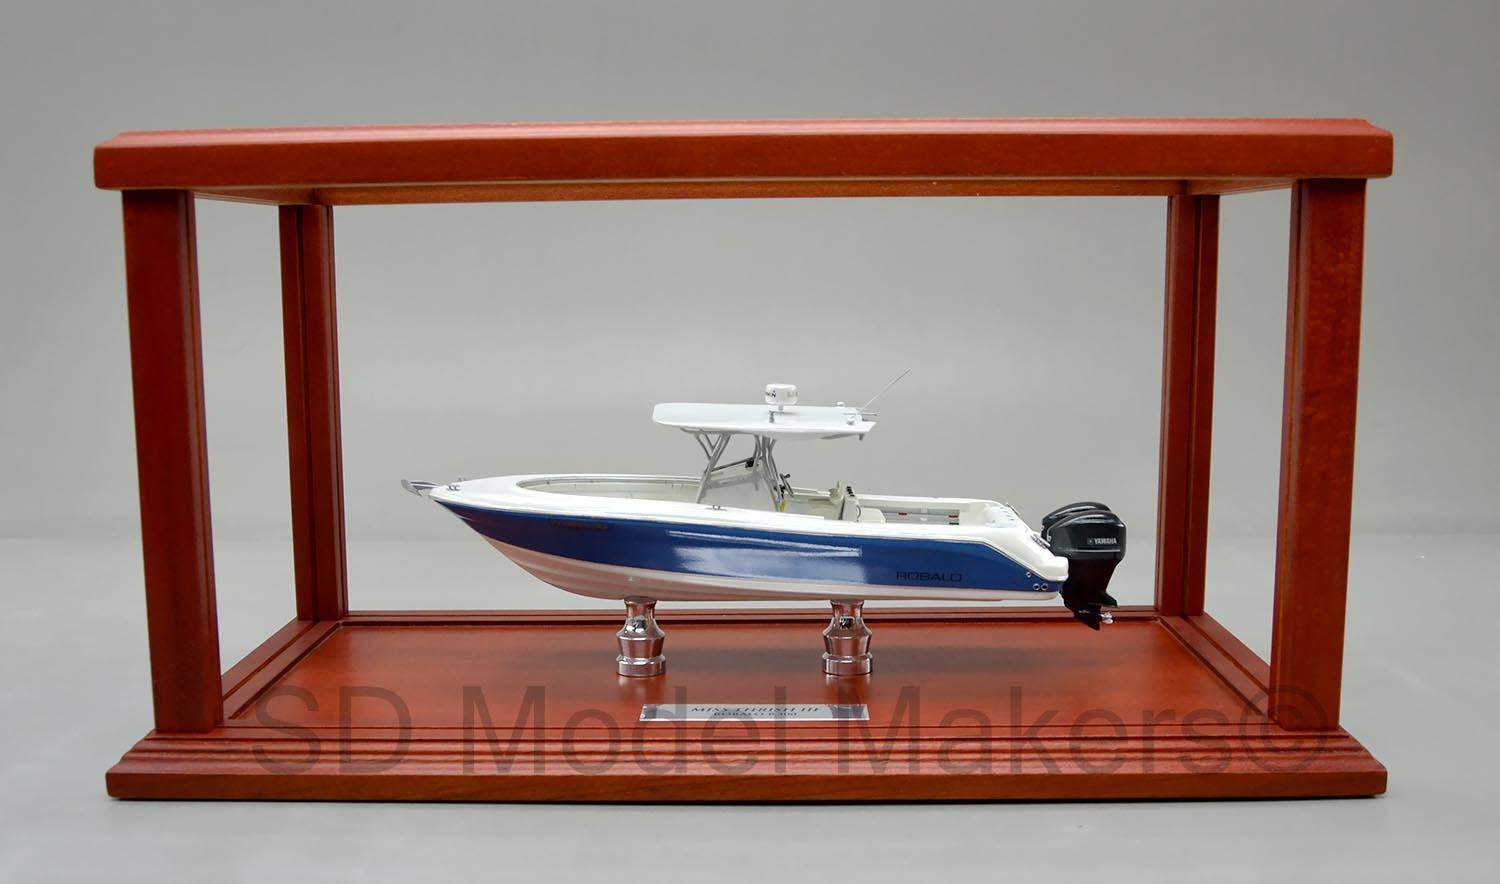 SD Model Makers > Custom Power Boat Models > Custom 31' Sport